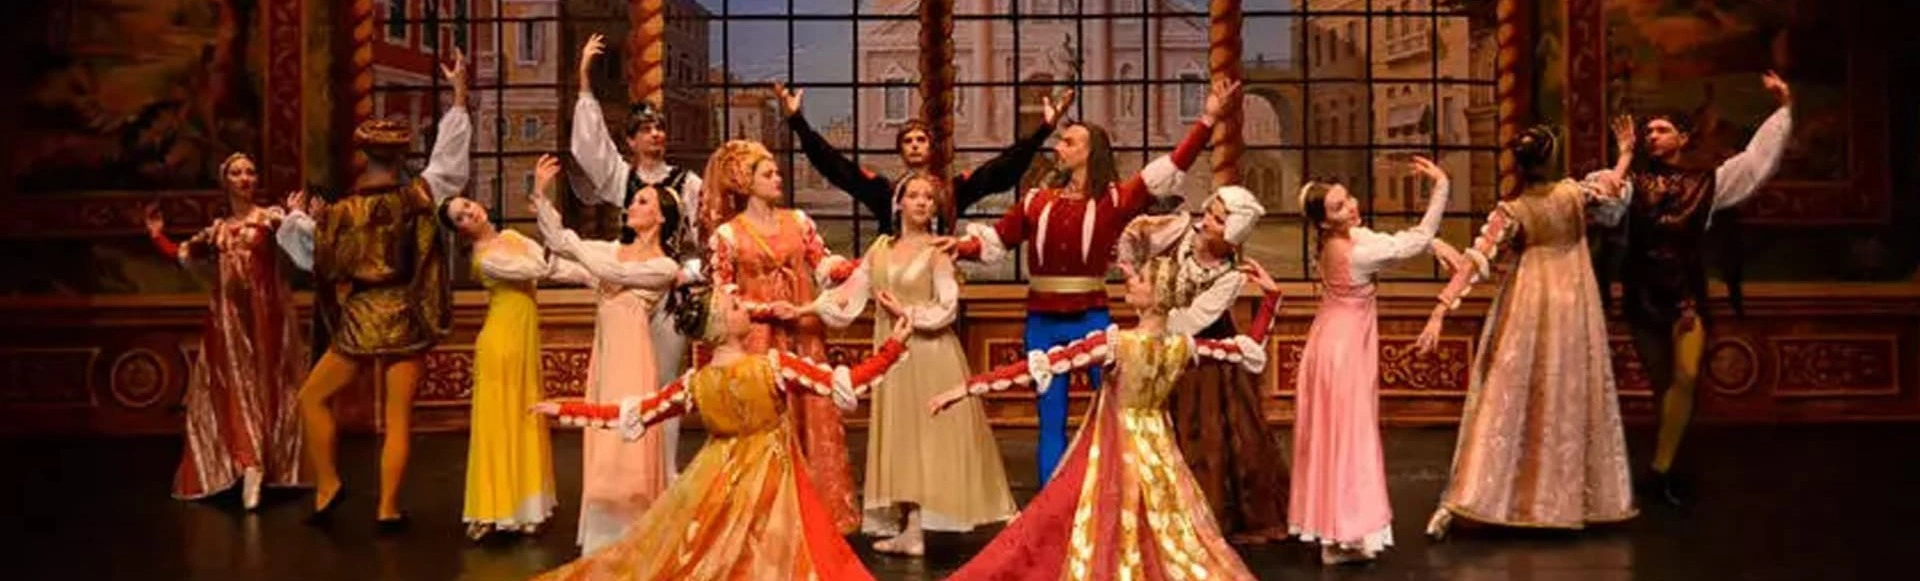 Балет «Ромео и Джульетта» покажут на сцене БКЗ «Октябрьский»